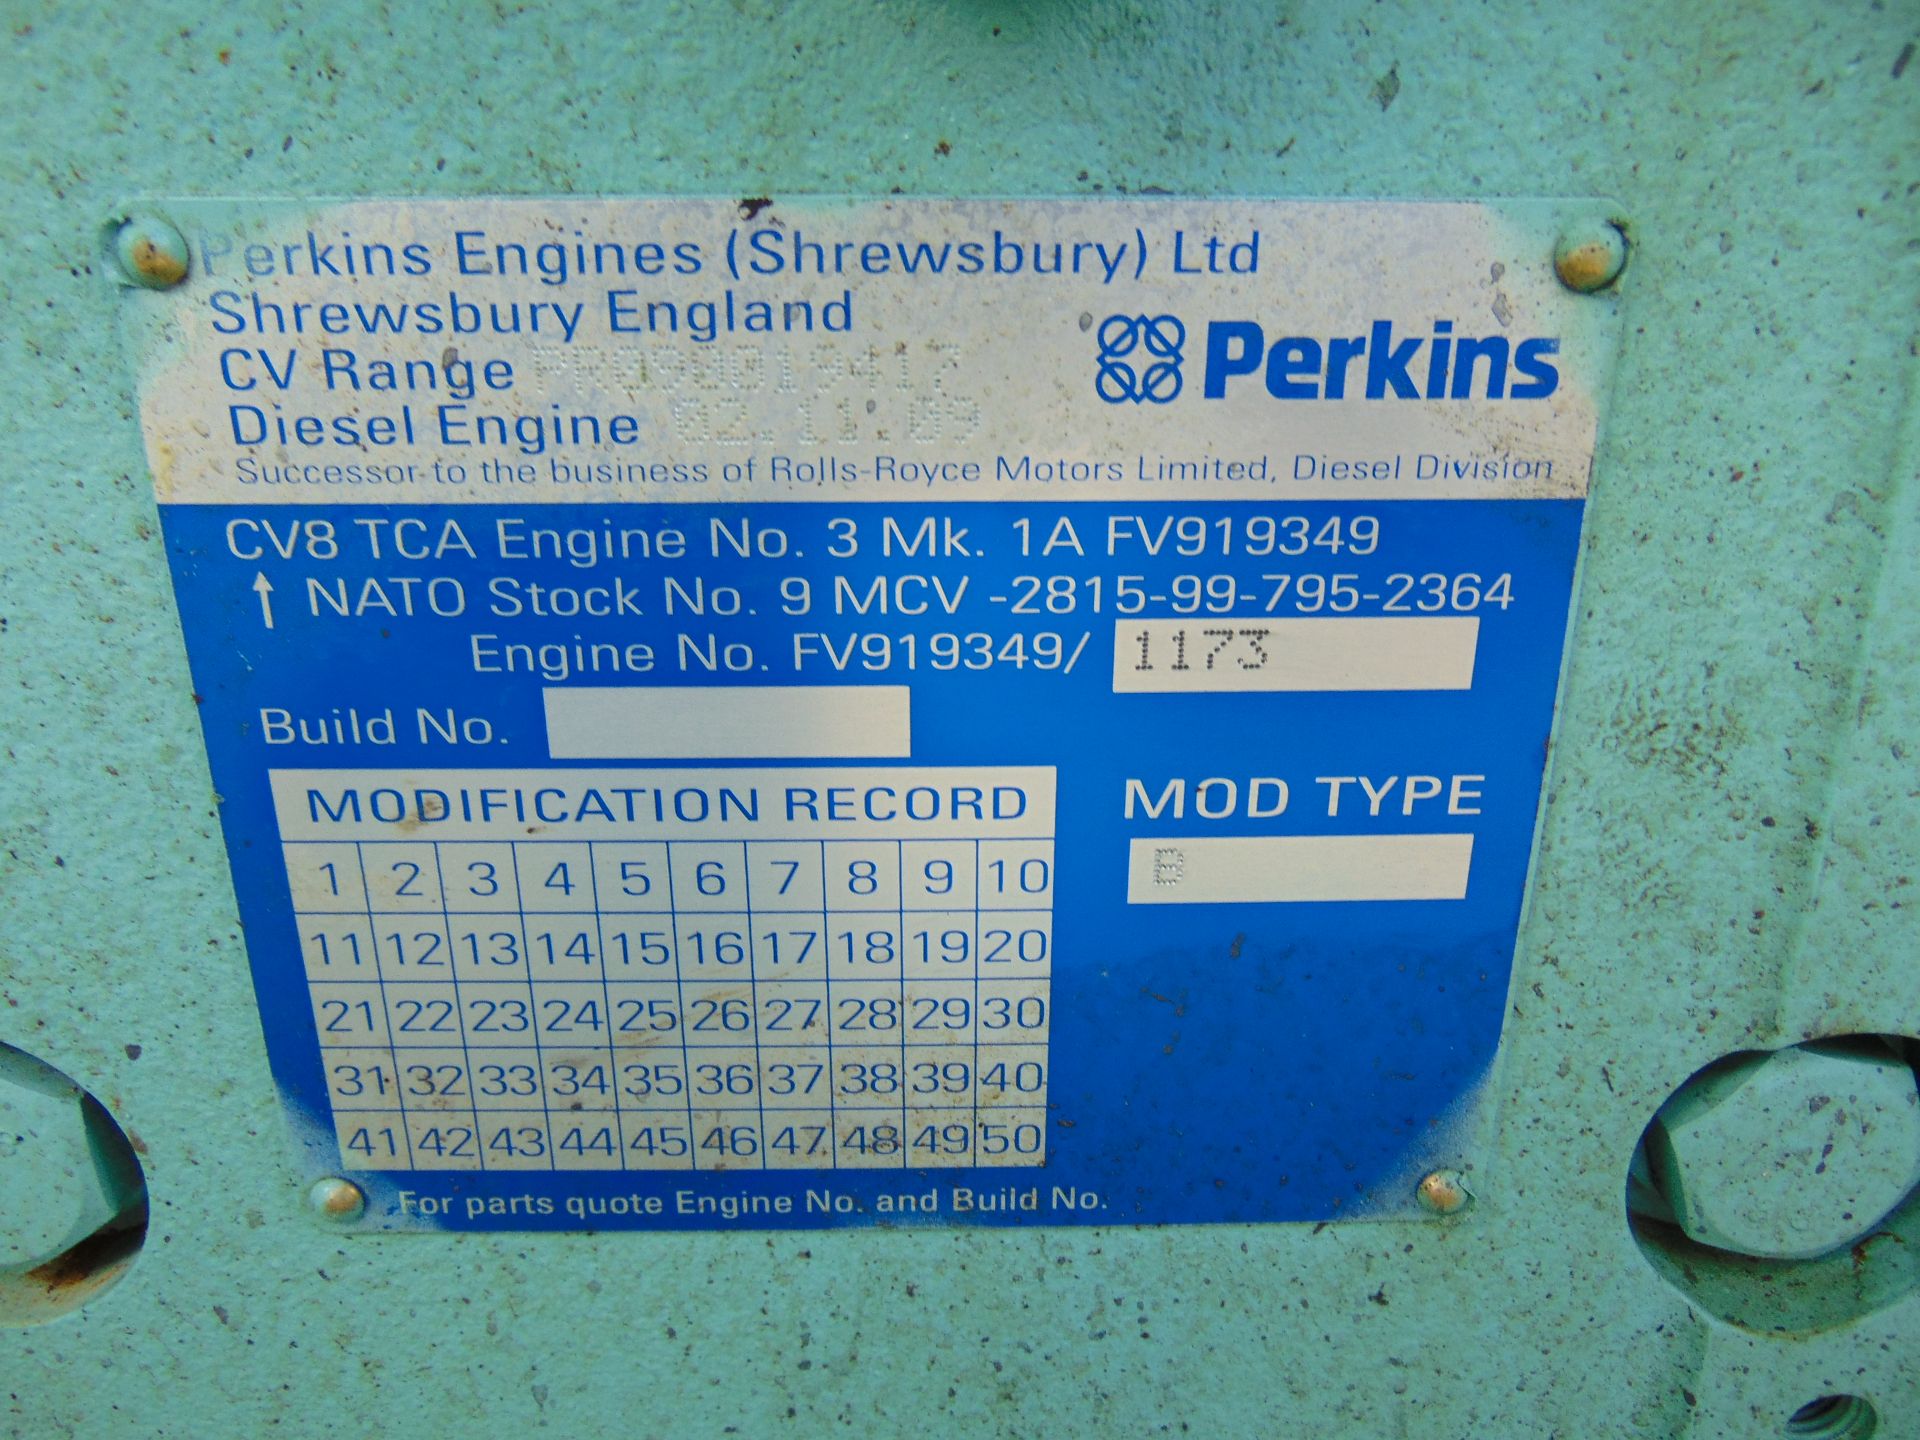 Rolls Royce-Perkins CV8 TCA550 17.4L Diesel Power Pack - Image 12 of 13